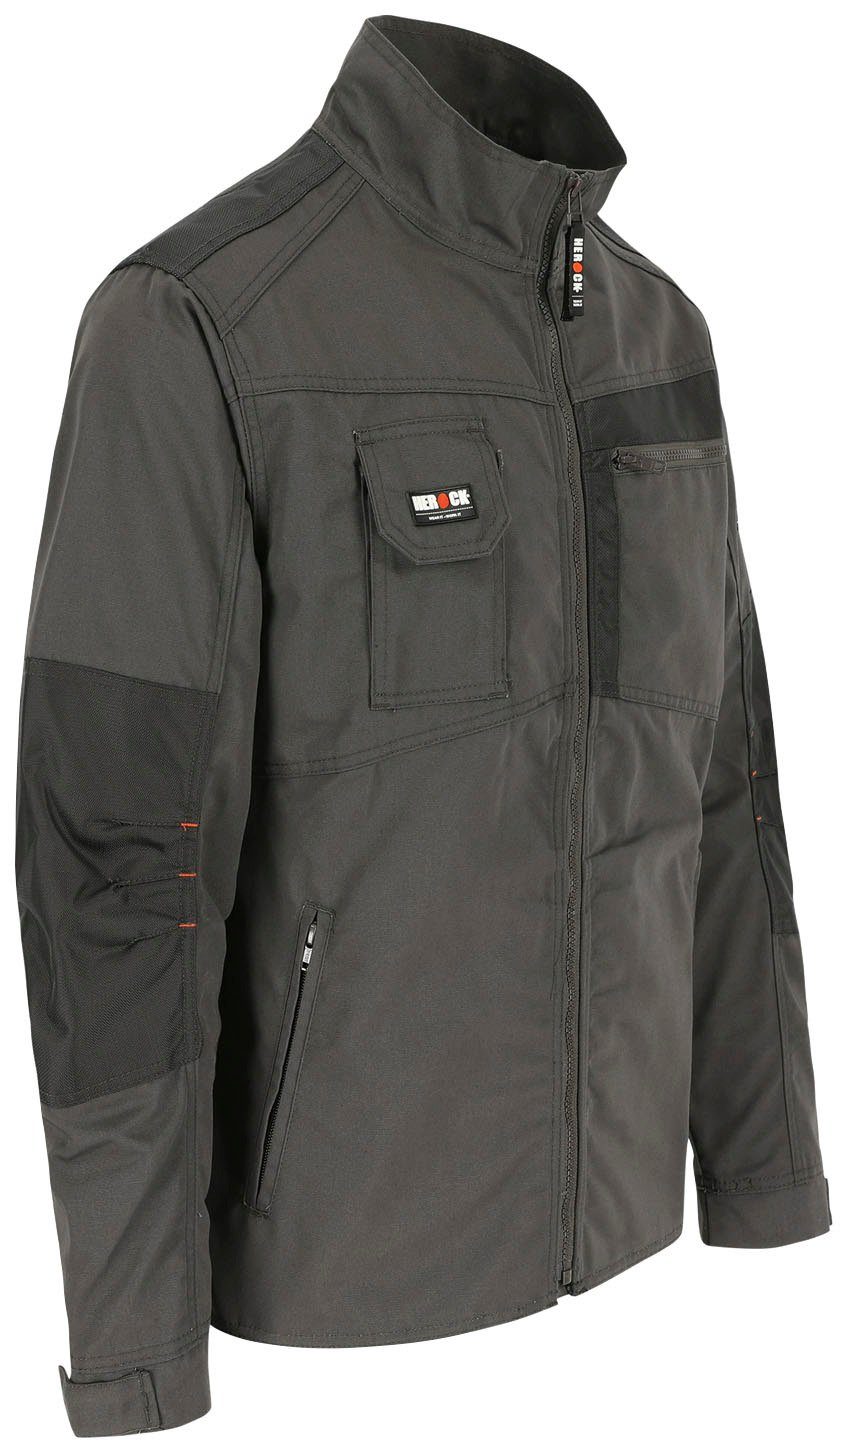 - Bündchen Herock Wasserabweisend verstellbare Arbeitsjacke 7 - Anzar robust - Jacke grau Taschen